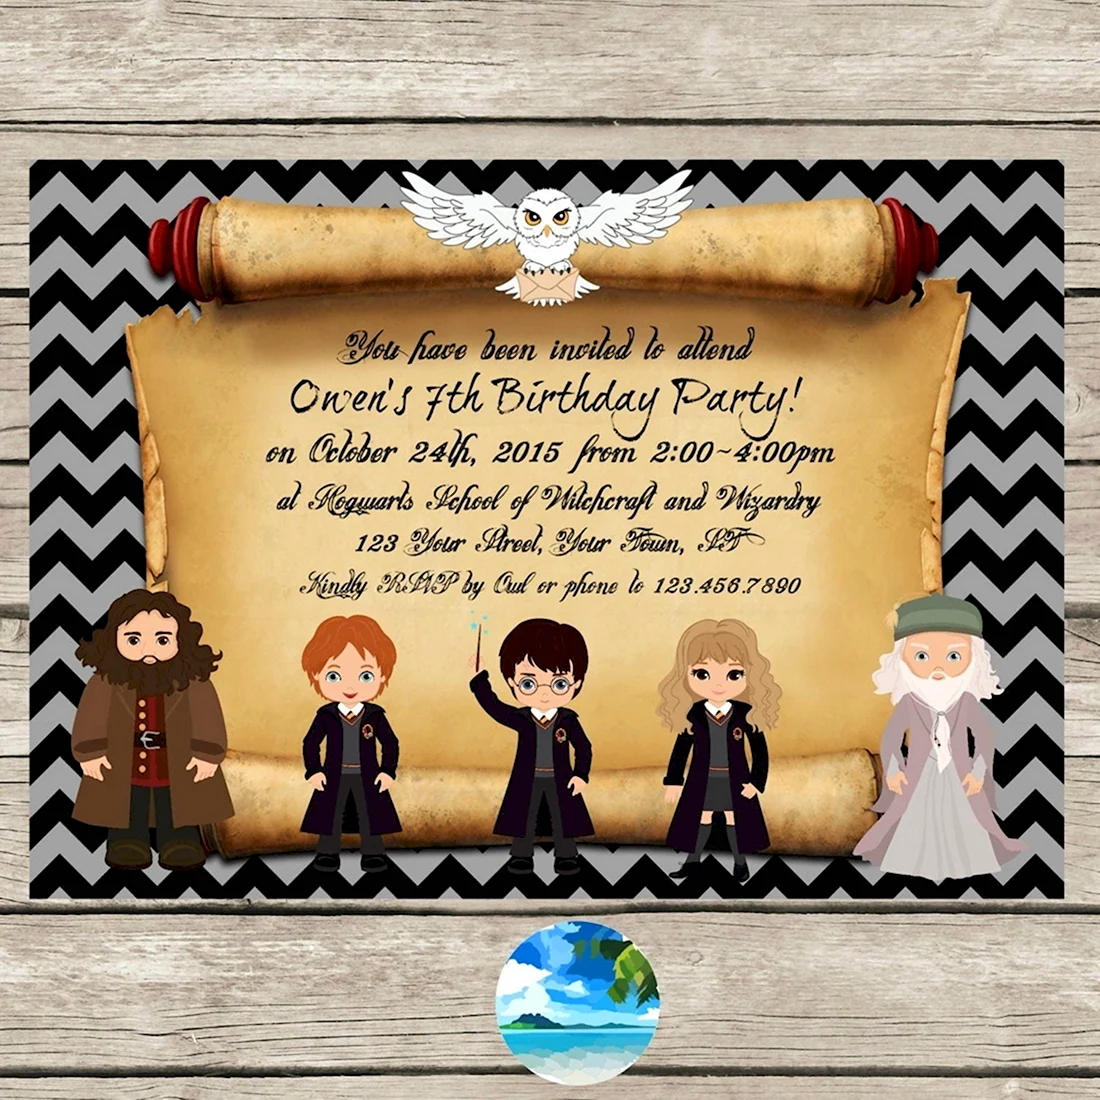 Приглашение на день рождения в стиле Гарри Поттера текст открытка